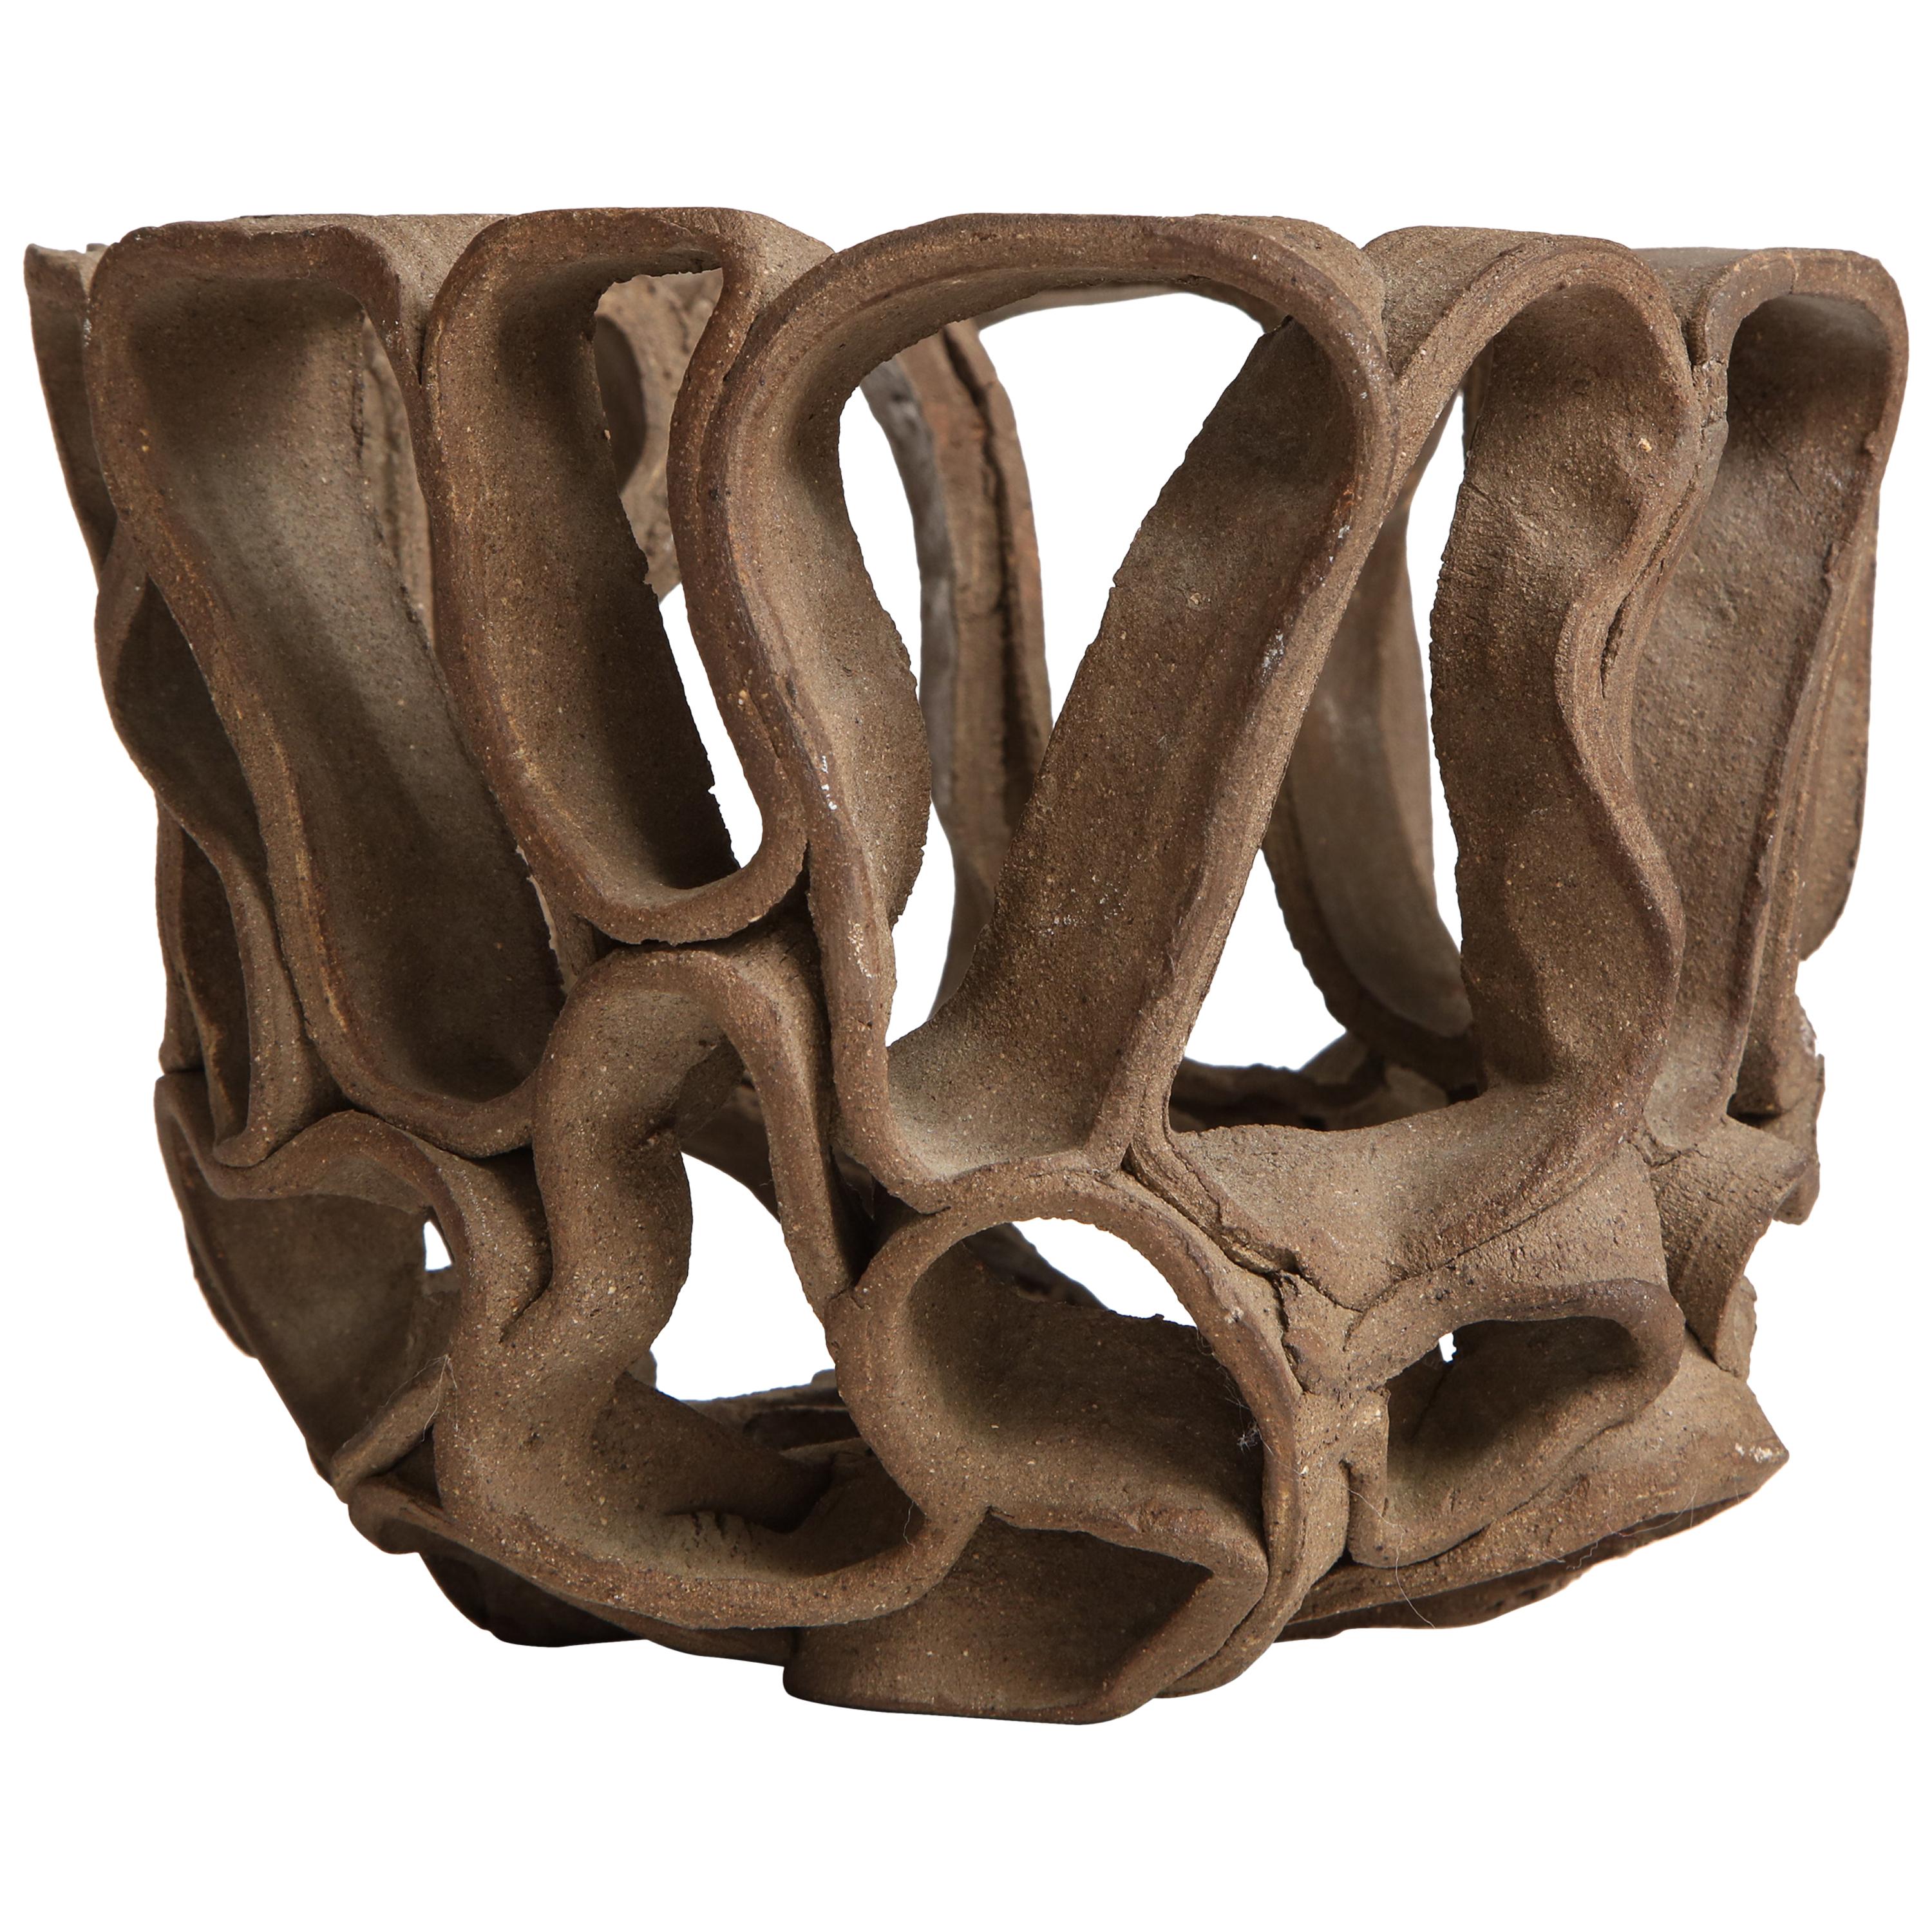 Modernist Open Form Ceramic Bowl